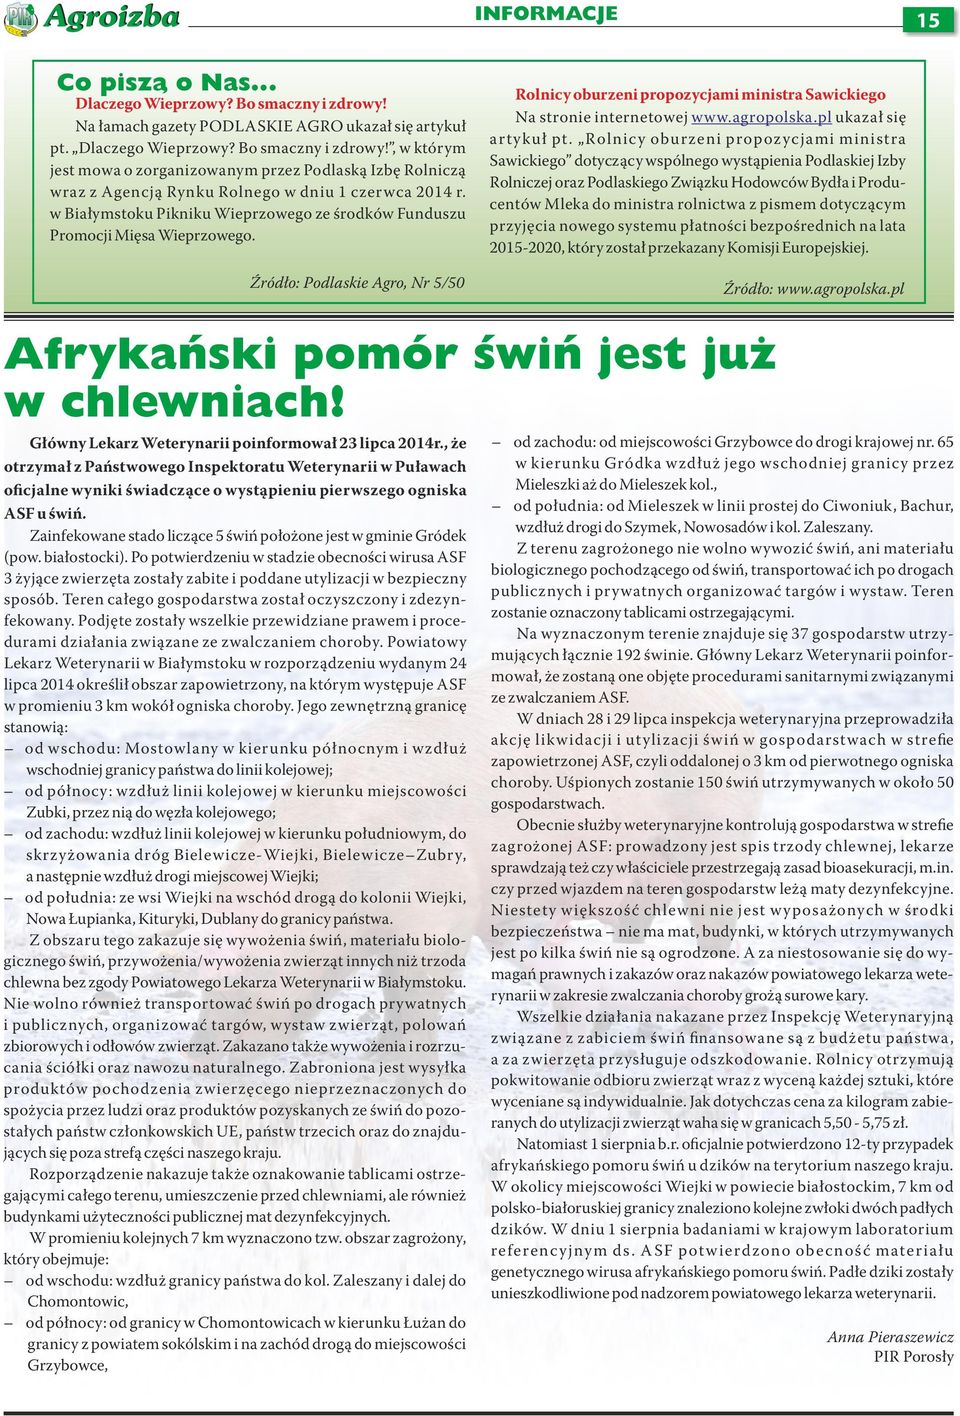 agropolska.pl ukaza si artyku pt.